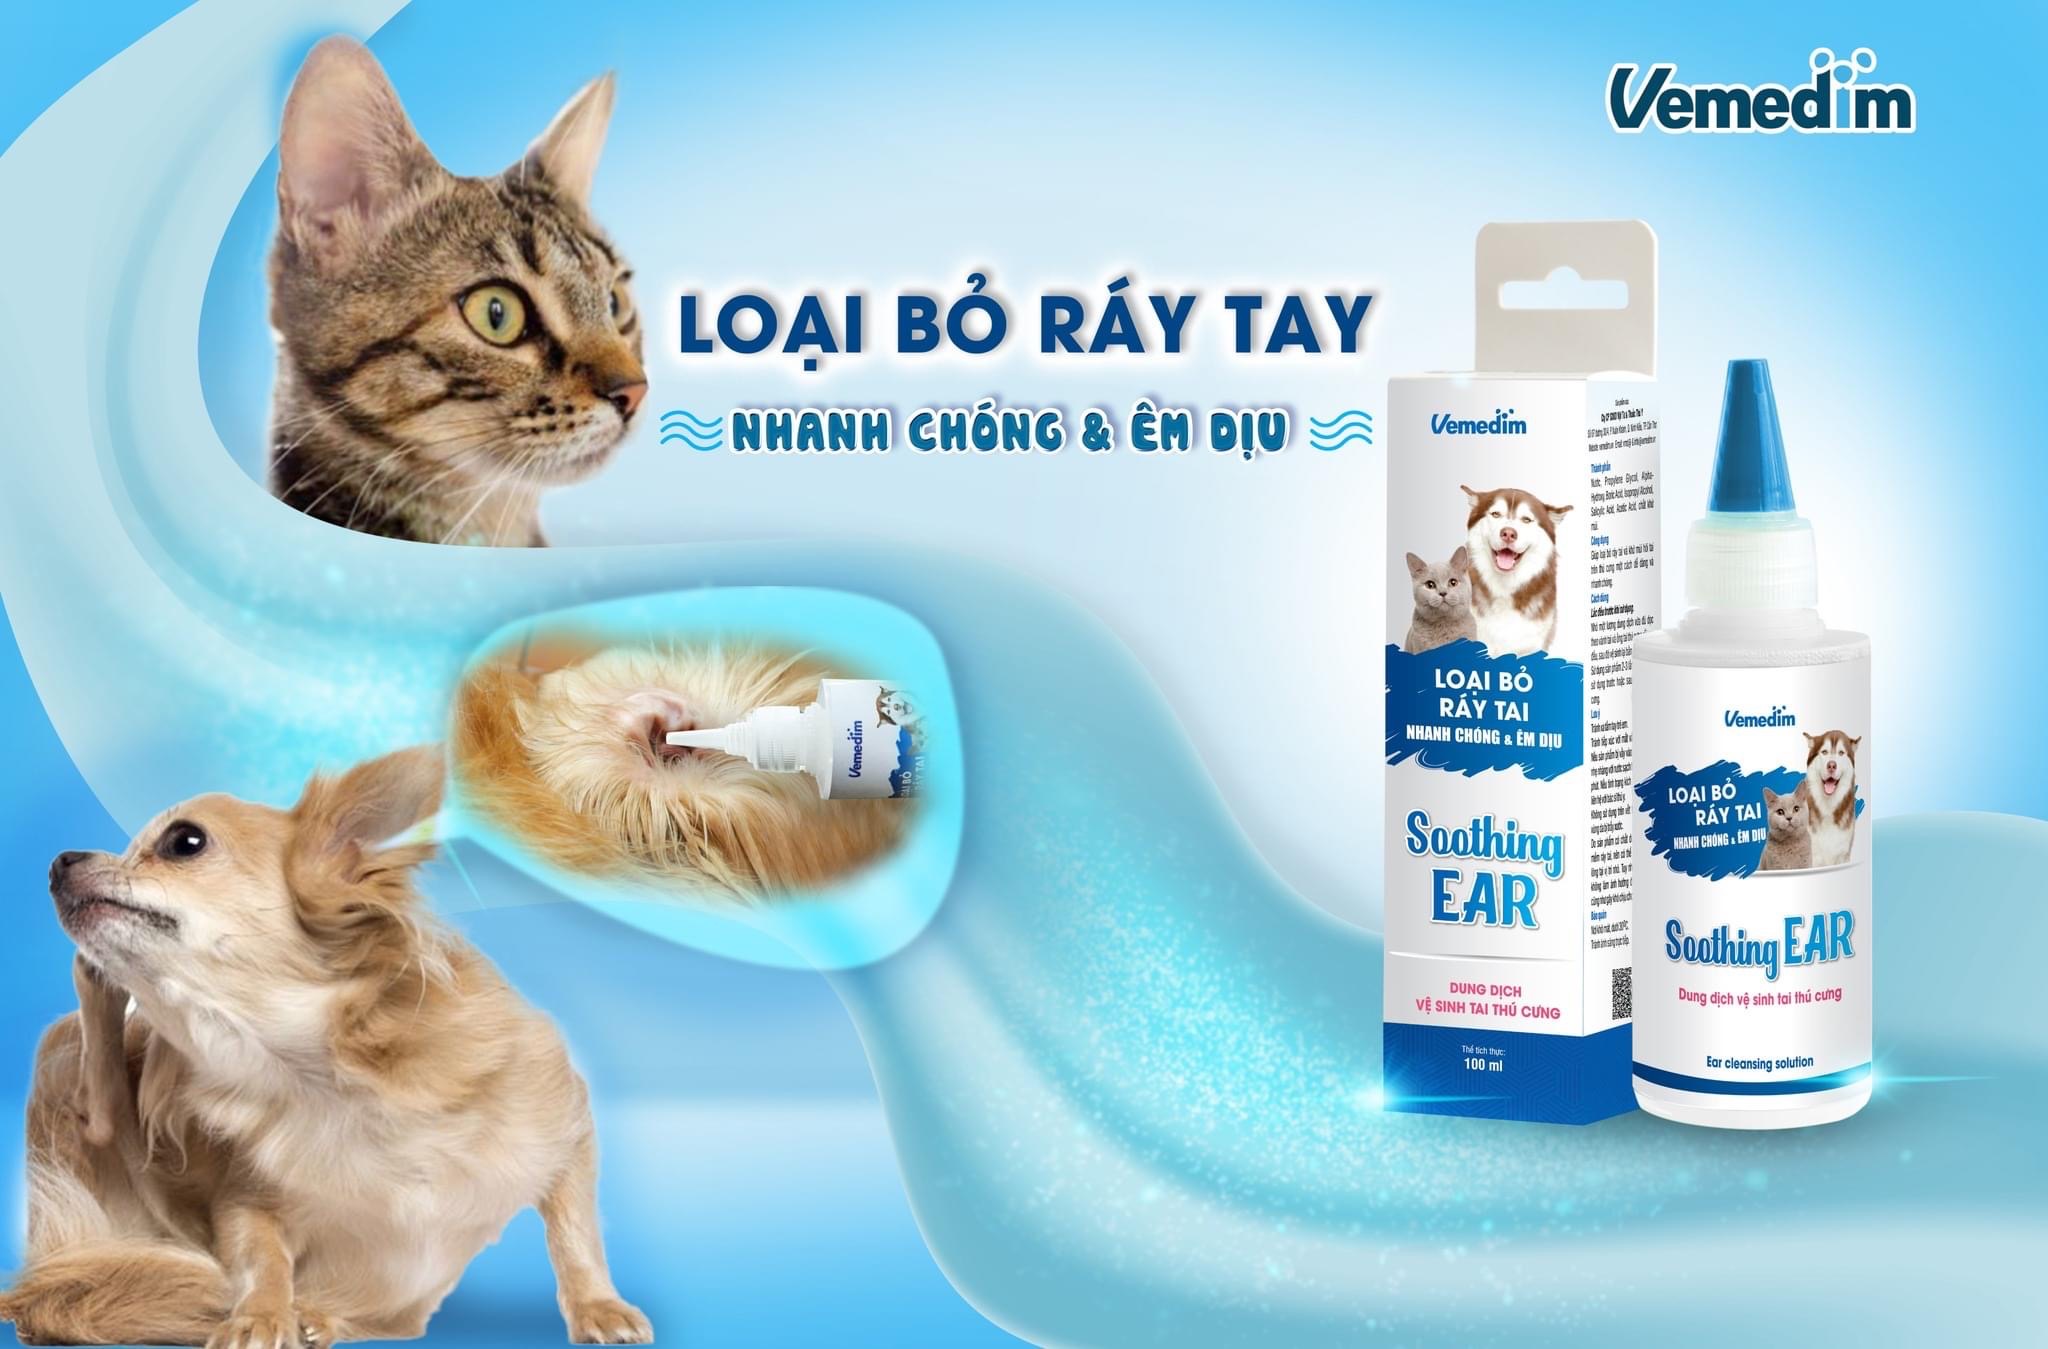 Soothing EAR - Dung dịch vệ sinh tai thú cưng, loại bỏ ráy tai chó mèo